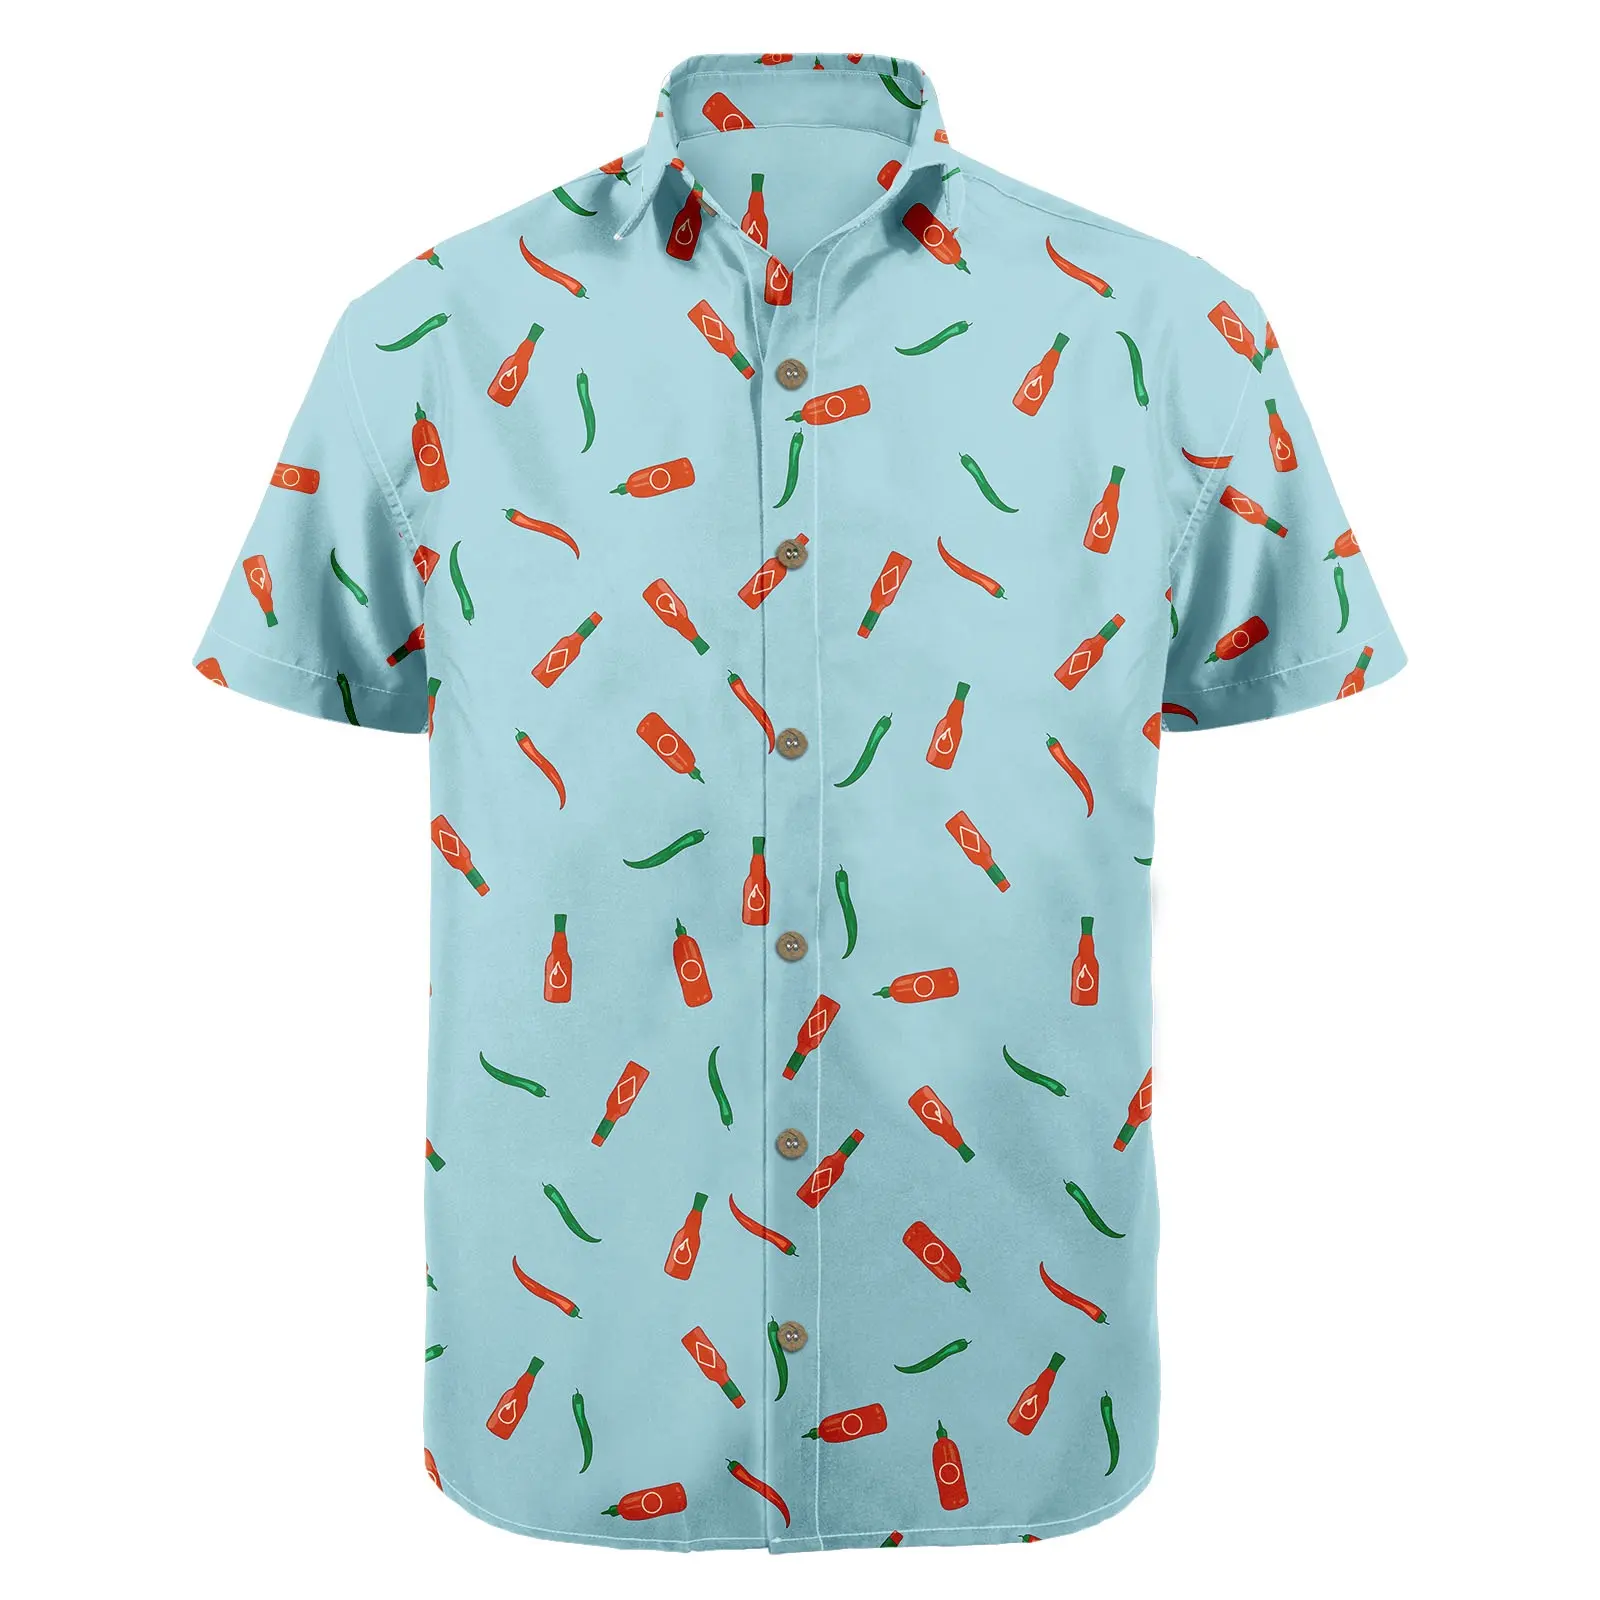 Hot Sells Männer Kleid Shirt Strand tragen Aloha Casual Camp Button Down Kurzarm Cruise Hawaiian Shirt HW-OTH14